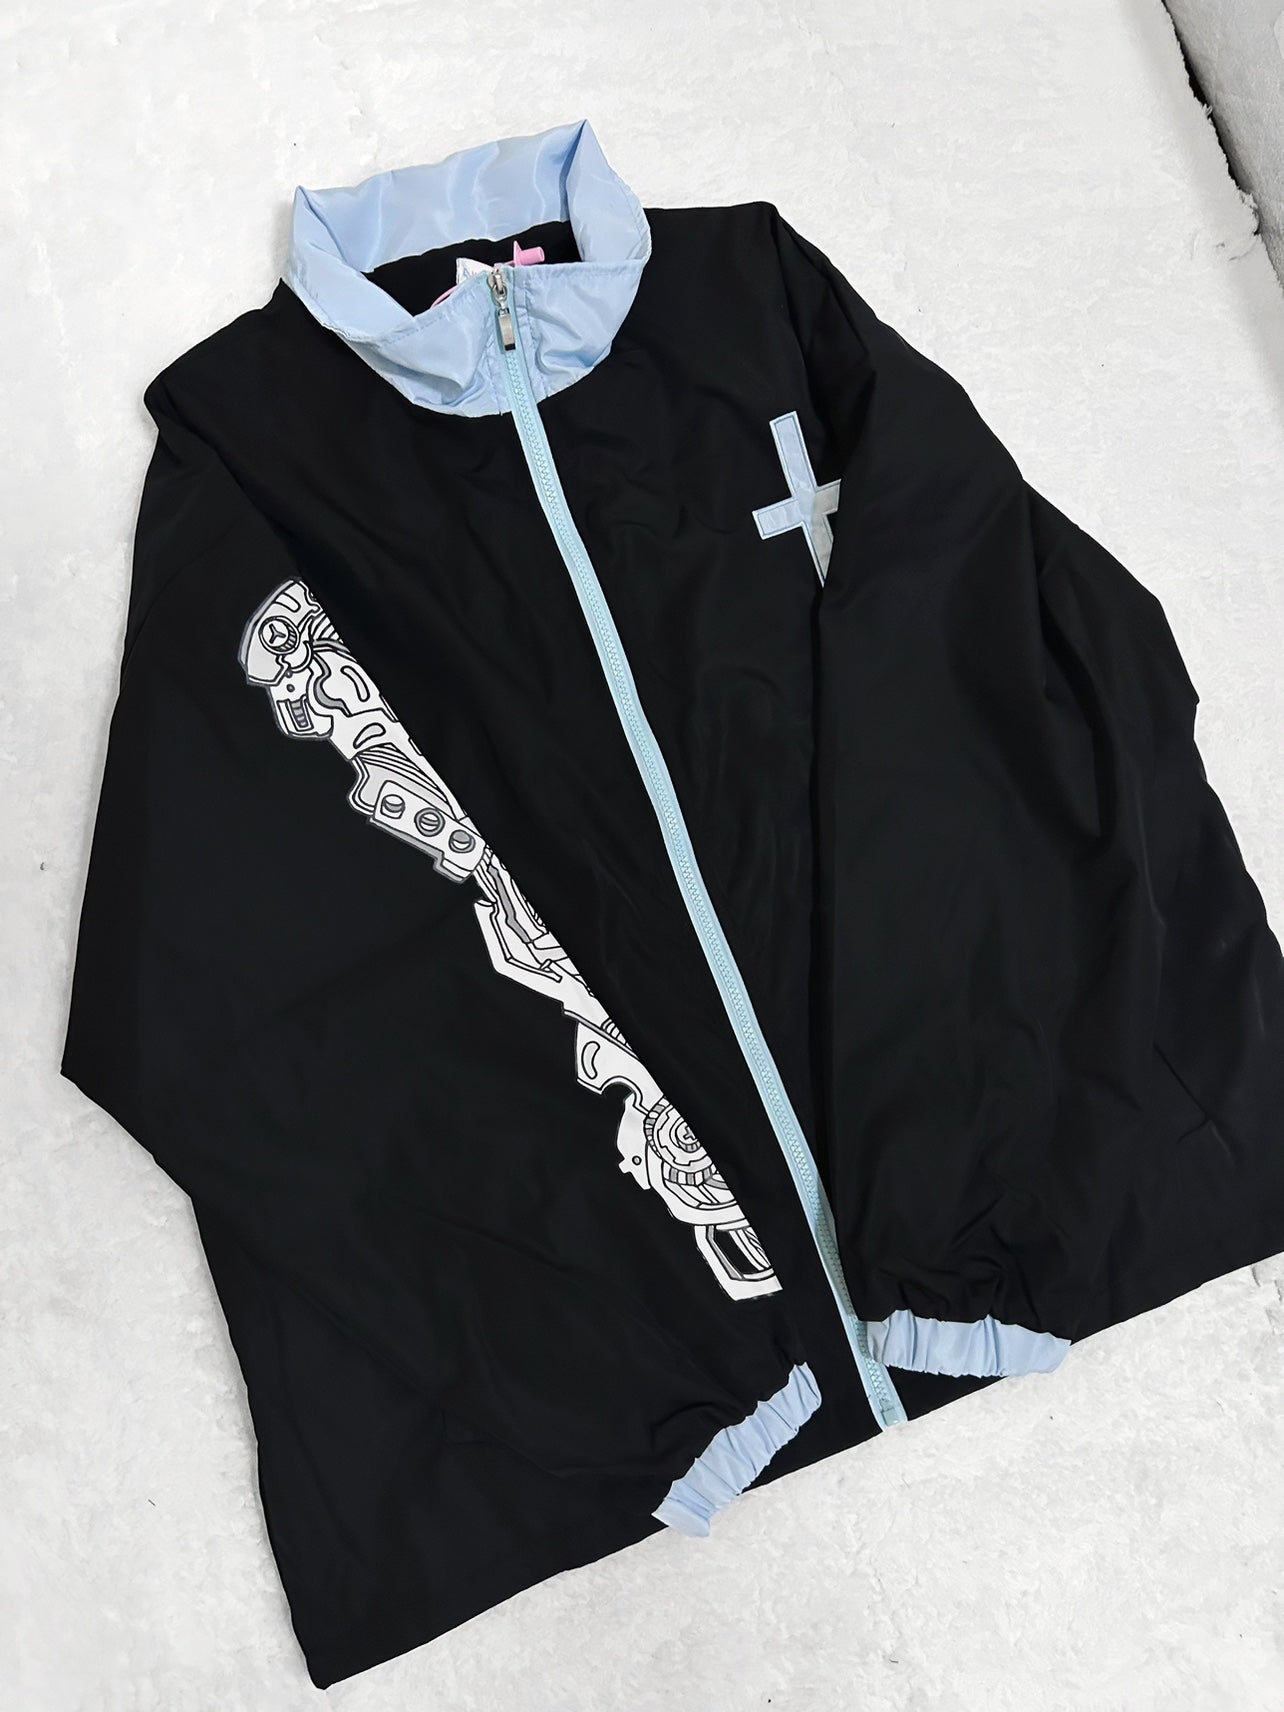 Plus Size Jirai Kei Coat Subculture Black White Jacket (L M S) 33988:484996